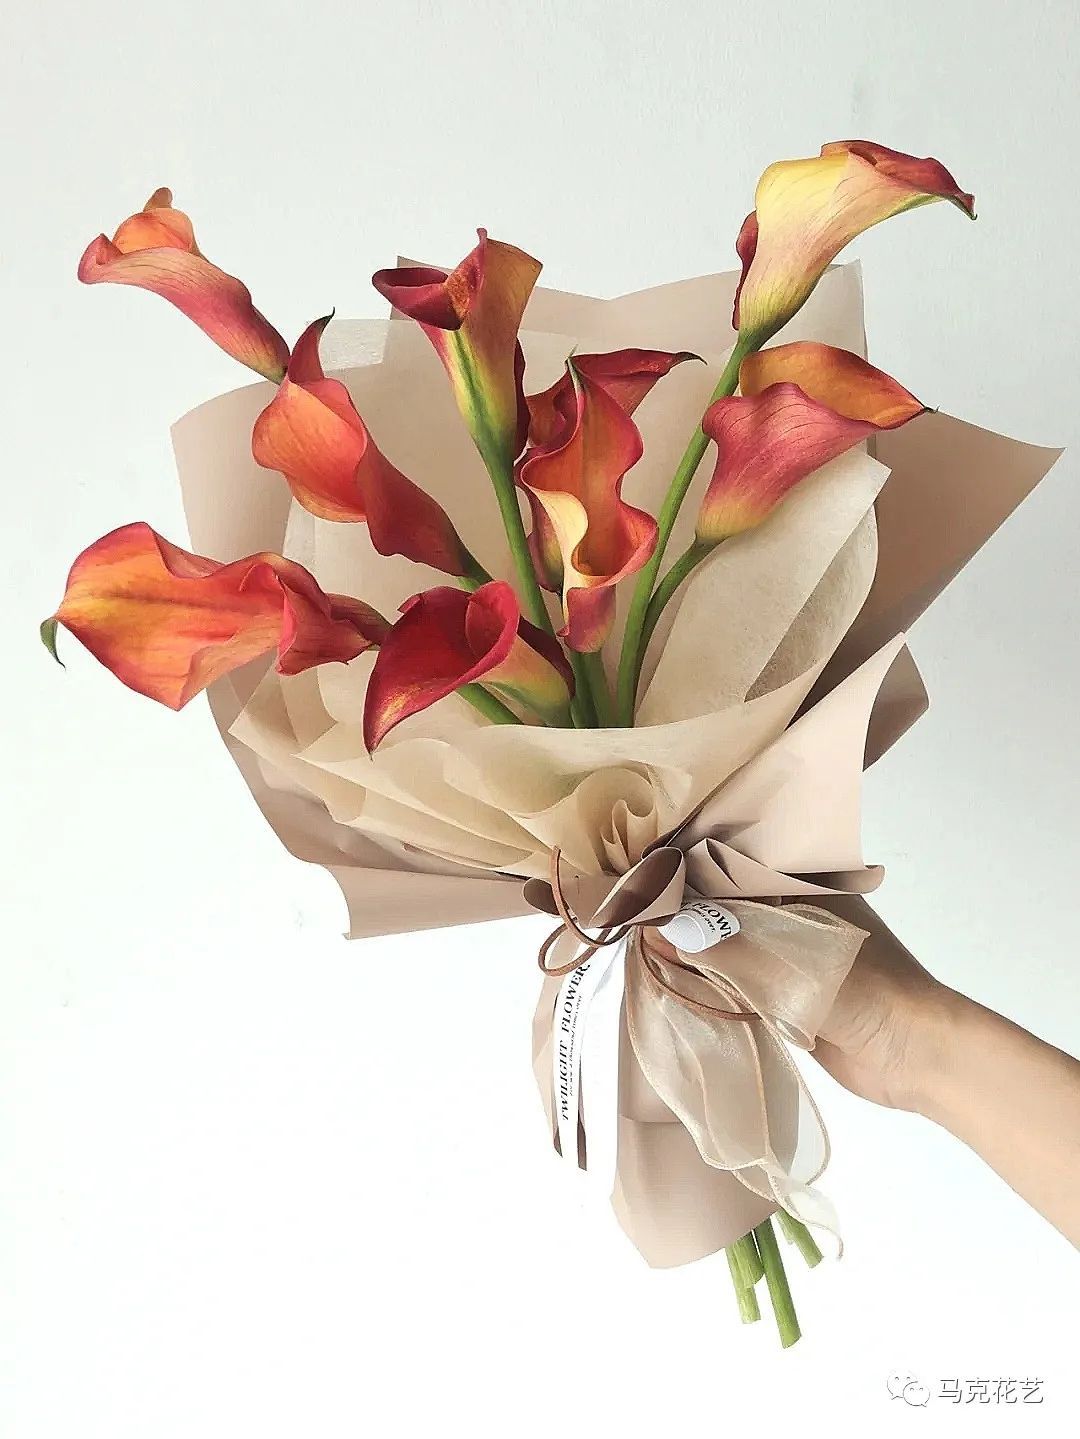 结婚纪念日送什么花？可选择百合花、并蒂莲和红掌-第59张图片